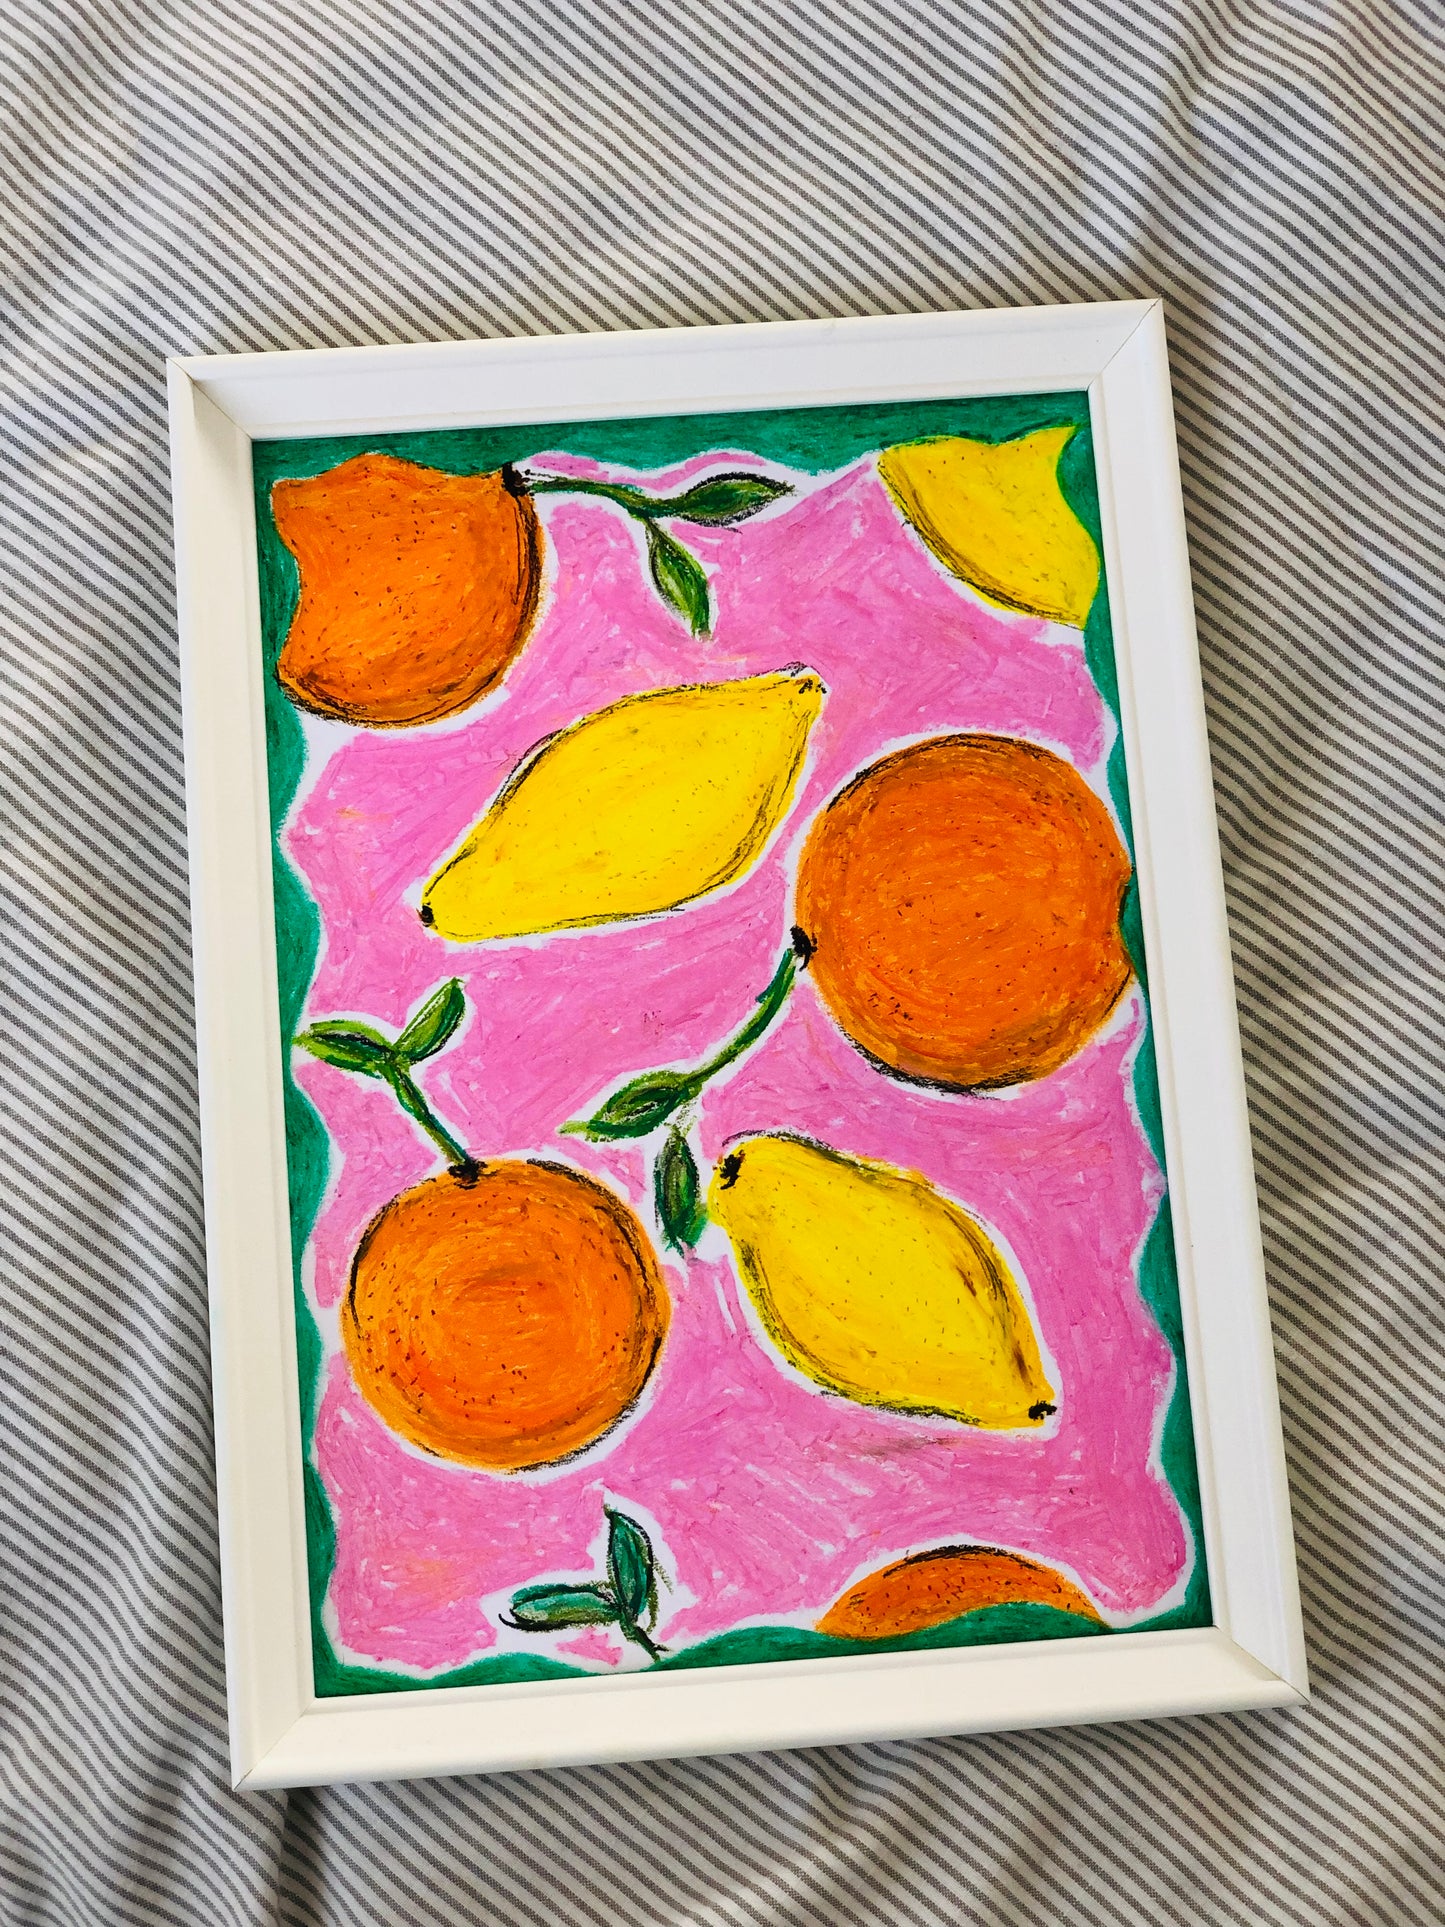 Oranges And Lemons, A4 Unframed Oil Pastel Original Artwork